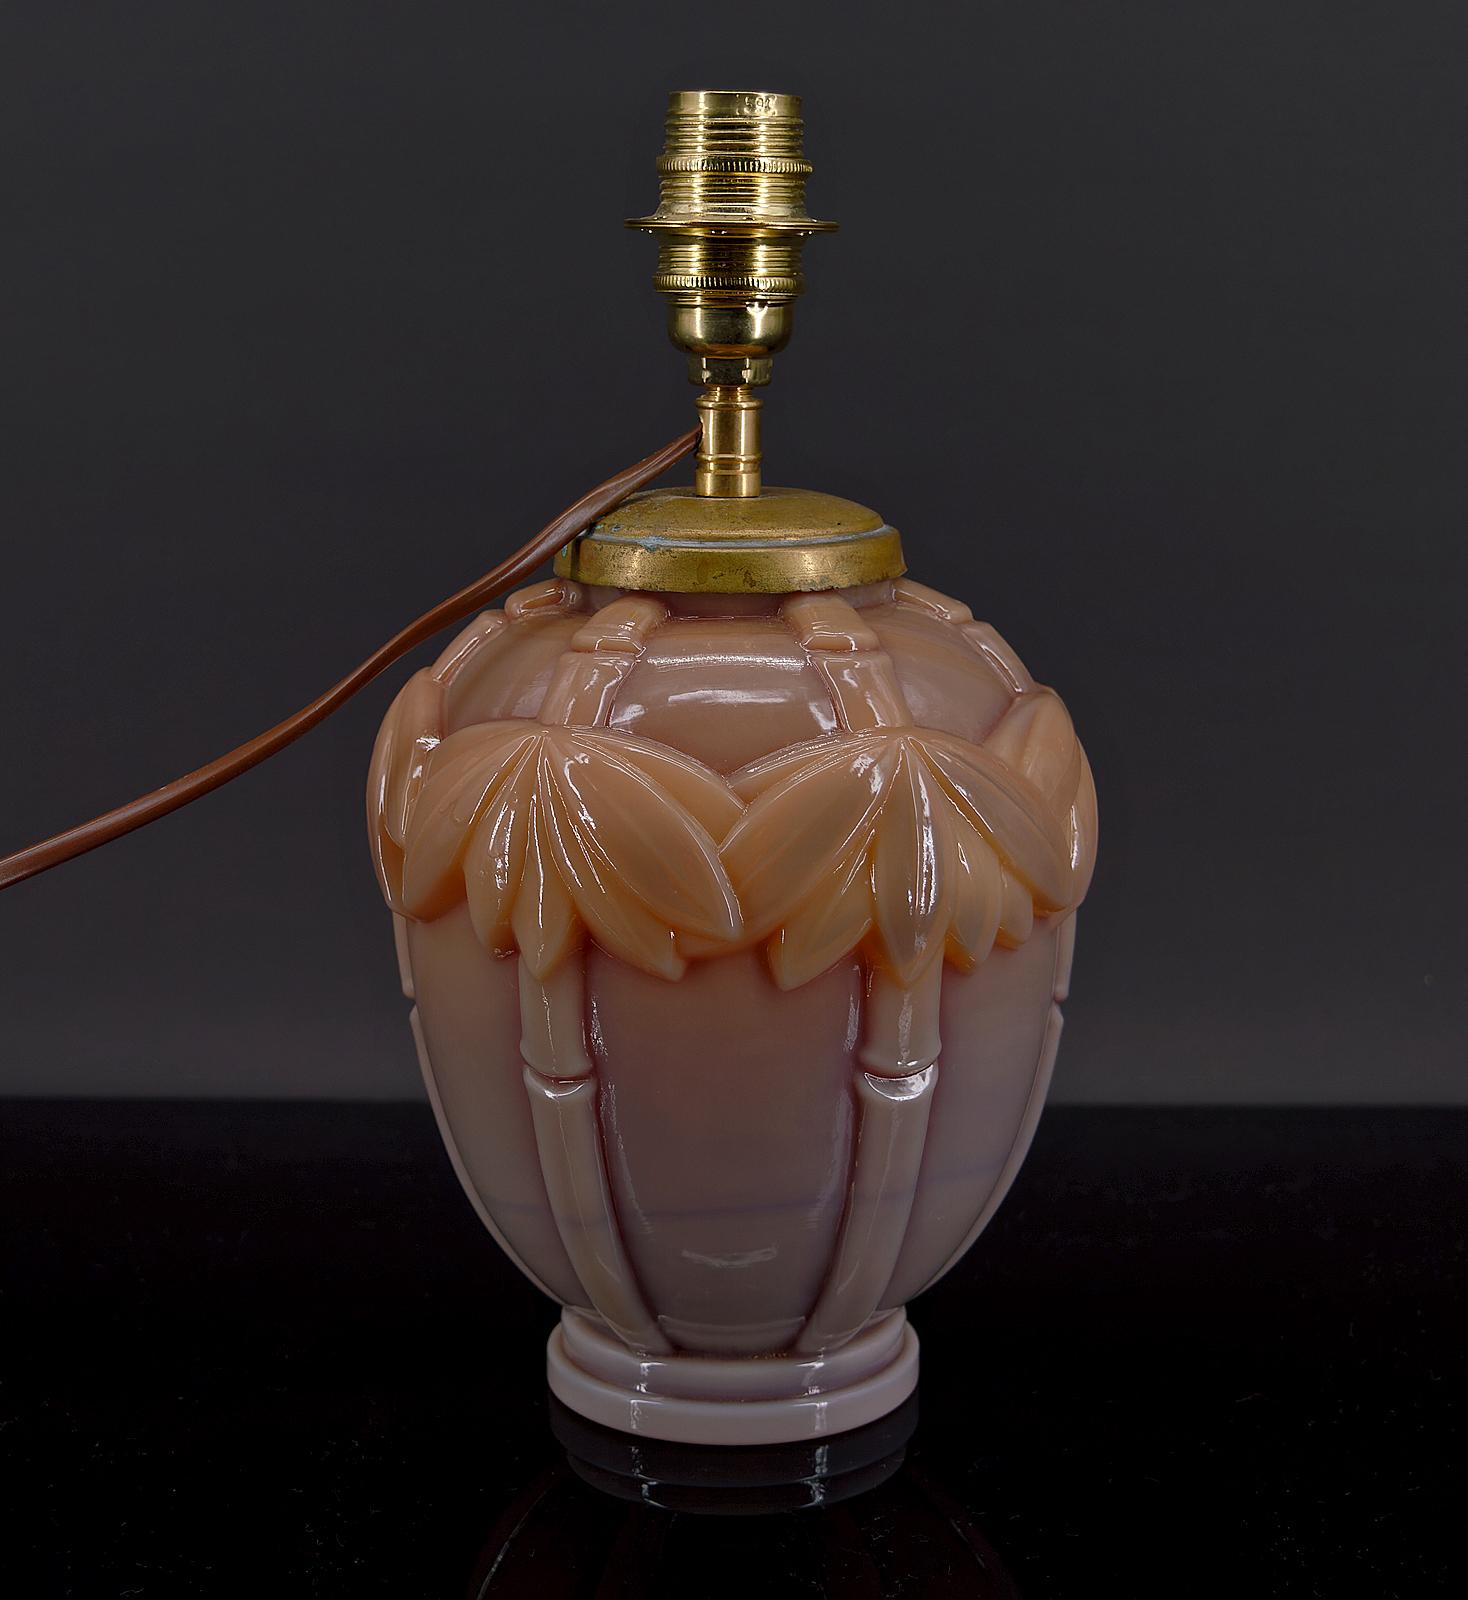 Jolie lampe de table en verre opalin moulé.

Couleur orange-rose dégradée, avec des motifs de bananes / bambous.

Art déco, France, vers 1930.
Inscriptions au dos : 